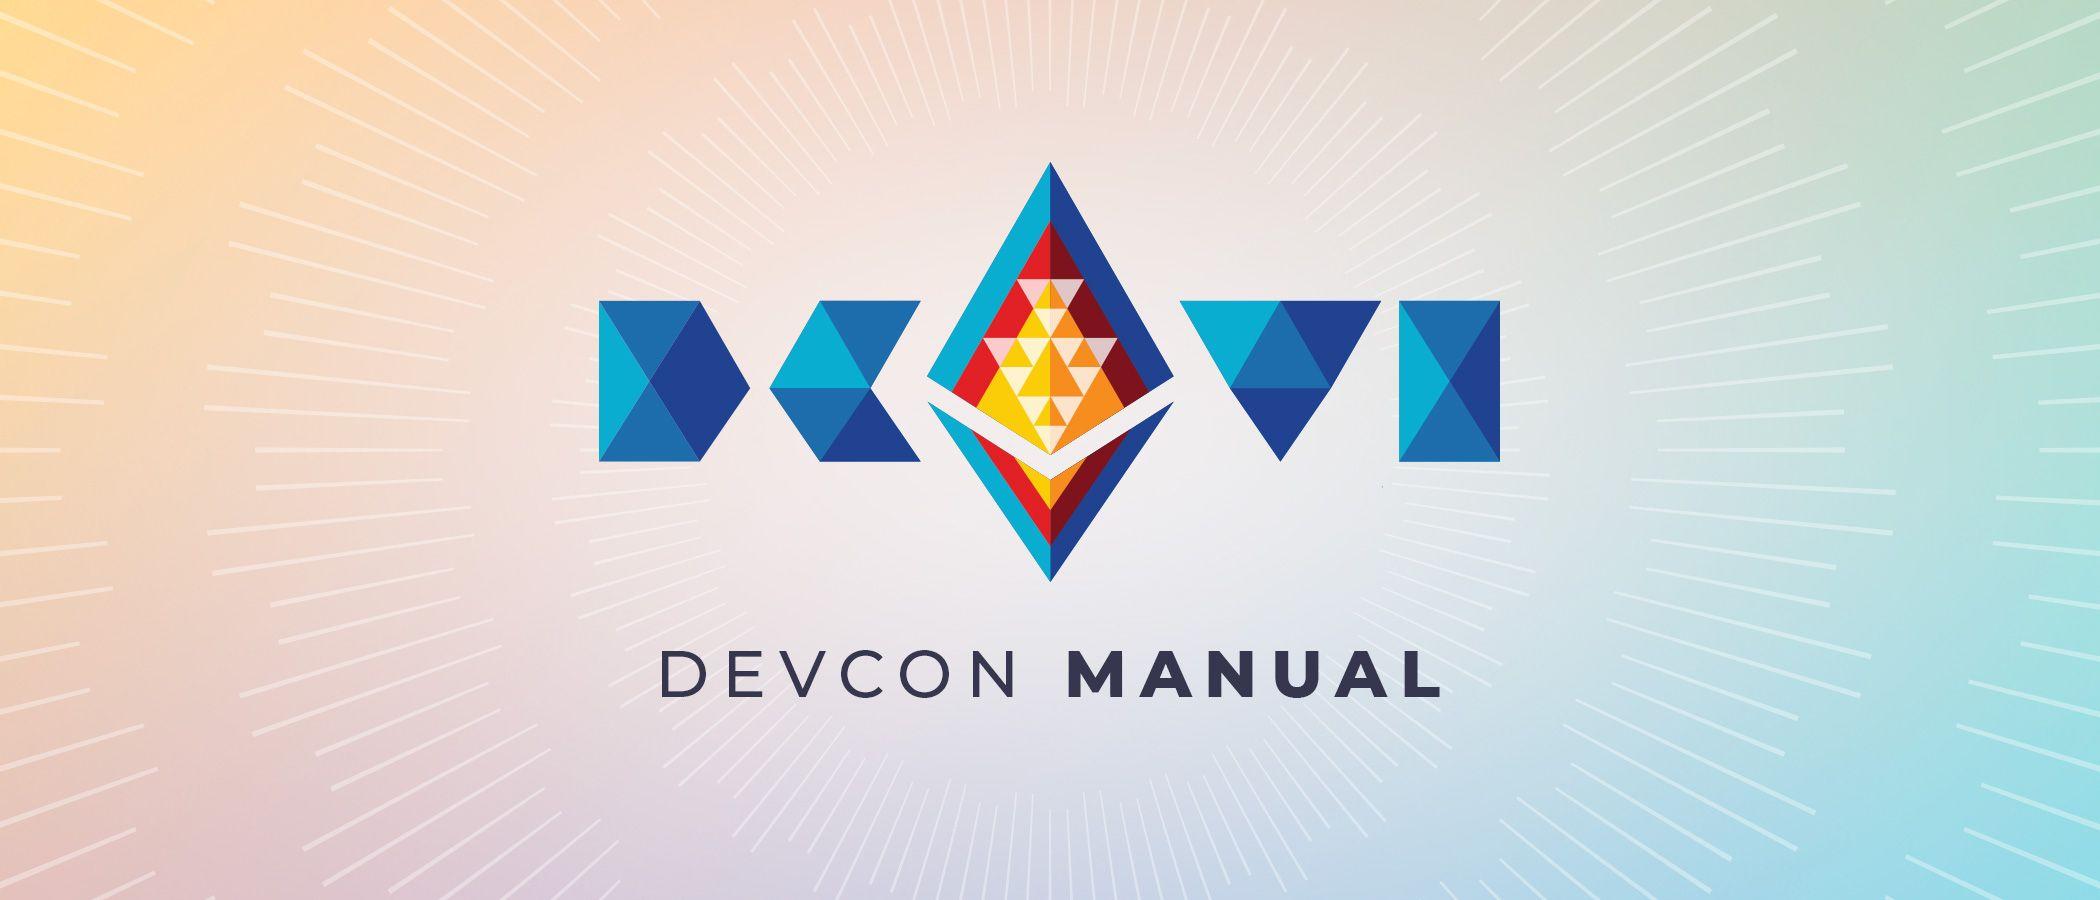 The Devcon VI Manual